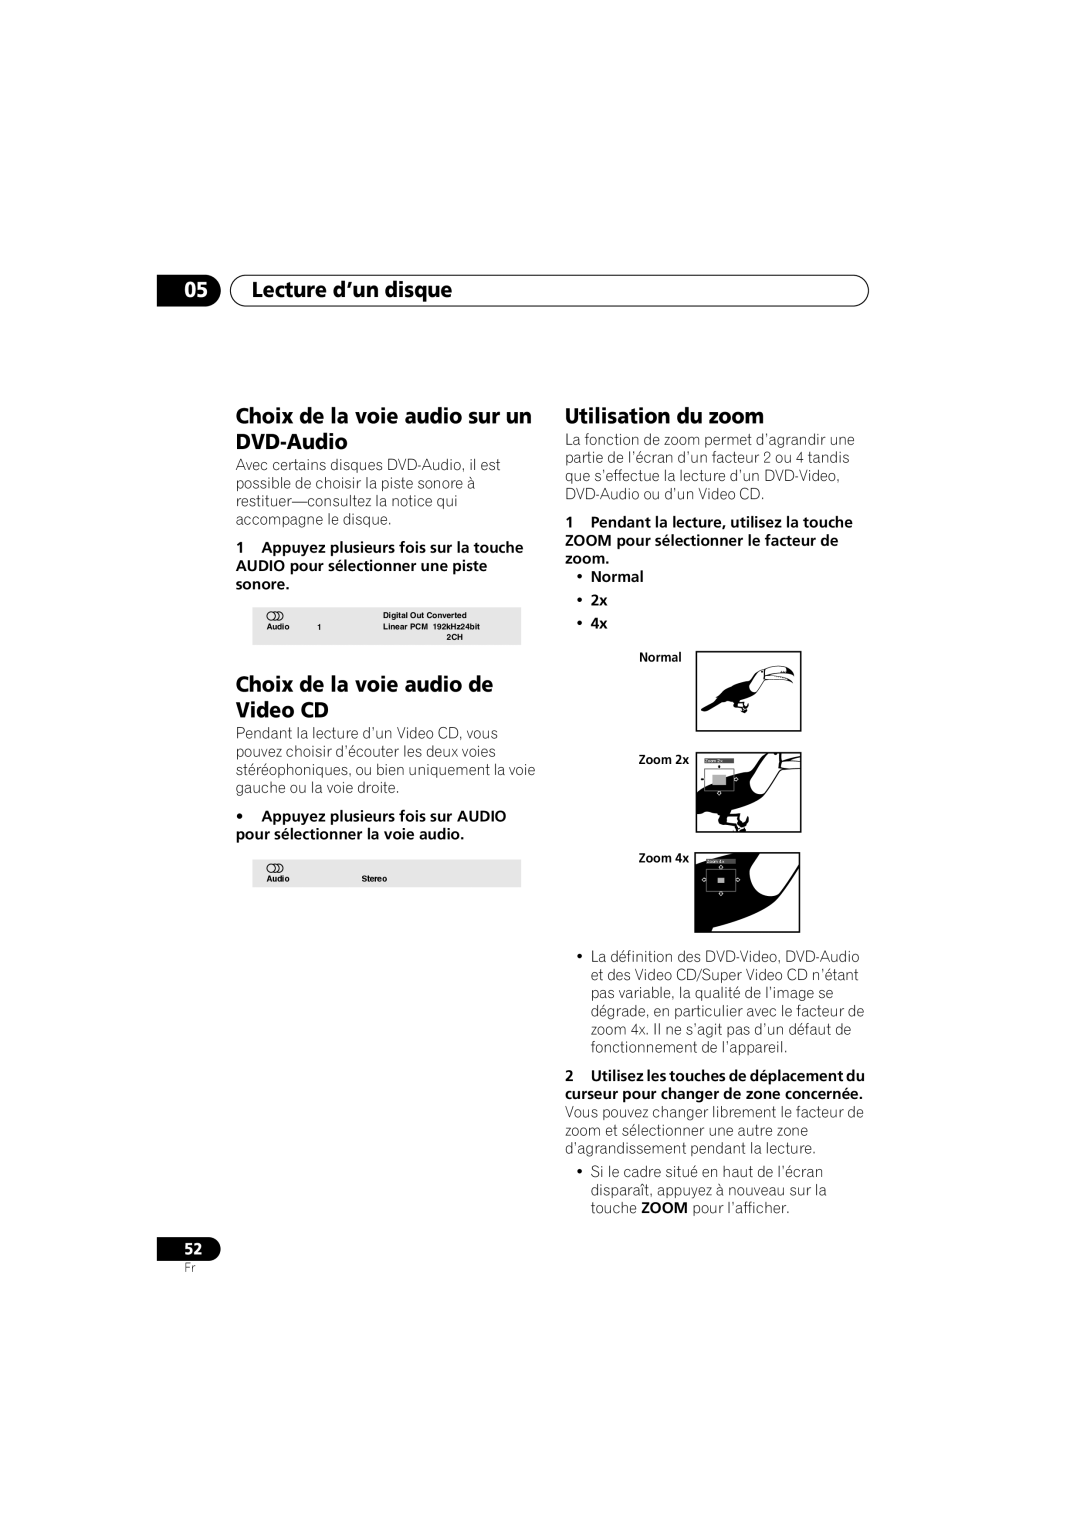 Pioneer S-DV990ST manual Choix de la voie audio sur un DVD-Audio, Choix de la voie audio de Video CD, Utilisation du zoom 